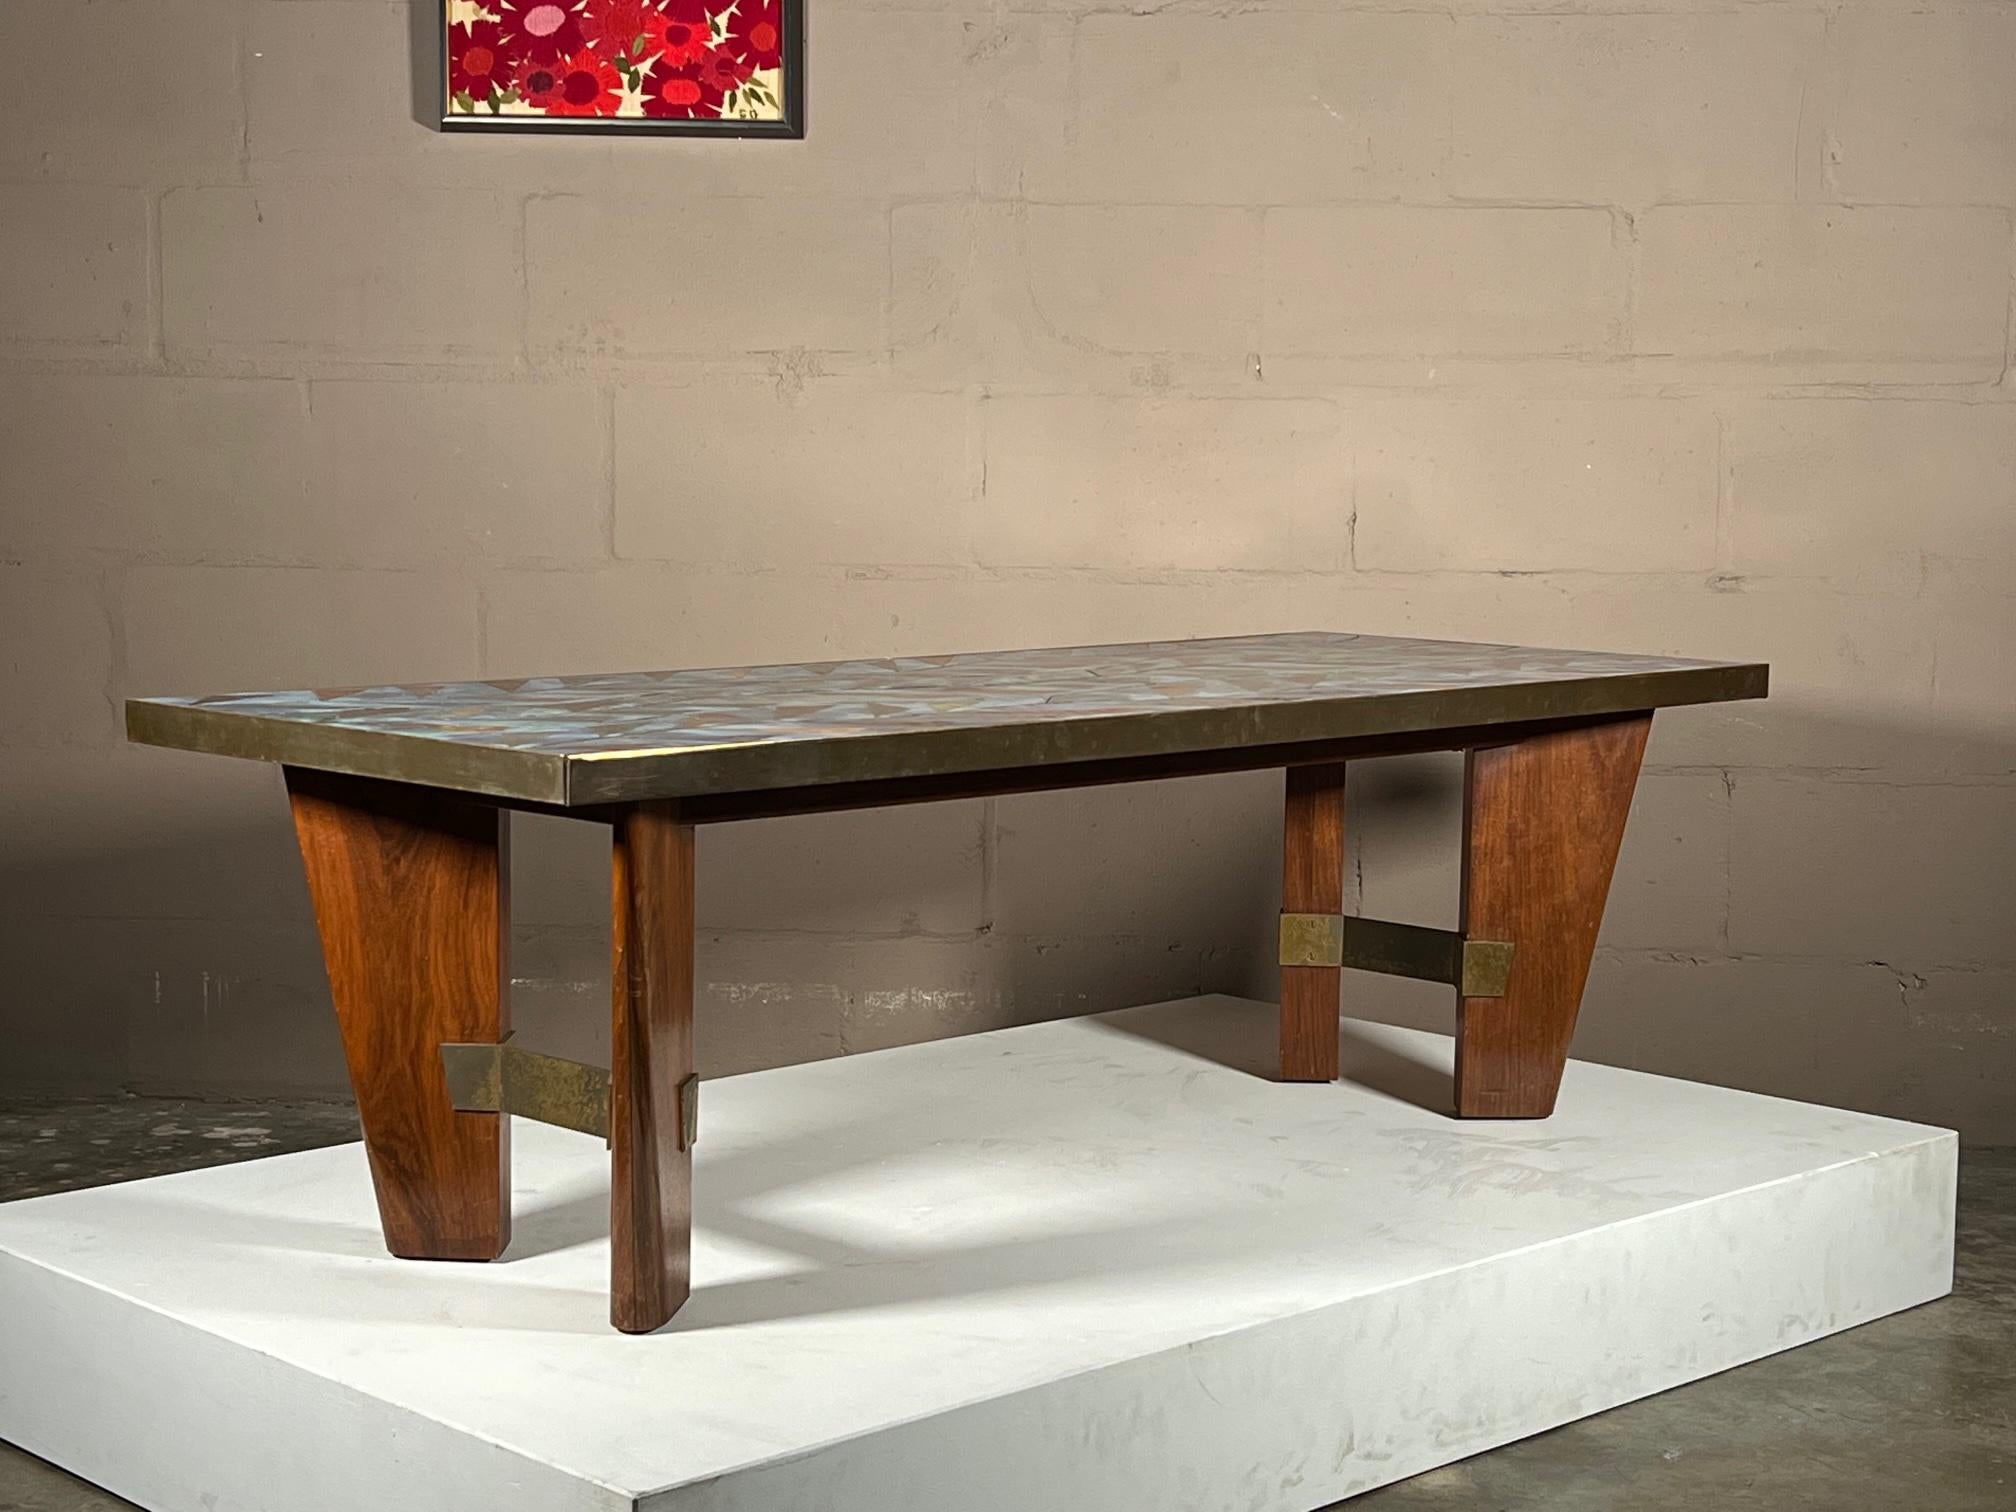 Remarquable table basse italienne avec plateau en émail, attribuée à Paolo De Poli. Couleurs vives, base sculpturale en noyer et laiton, cette pièce est unique en son genre et fait sensation.